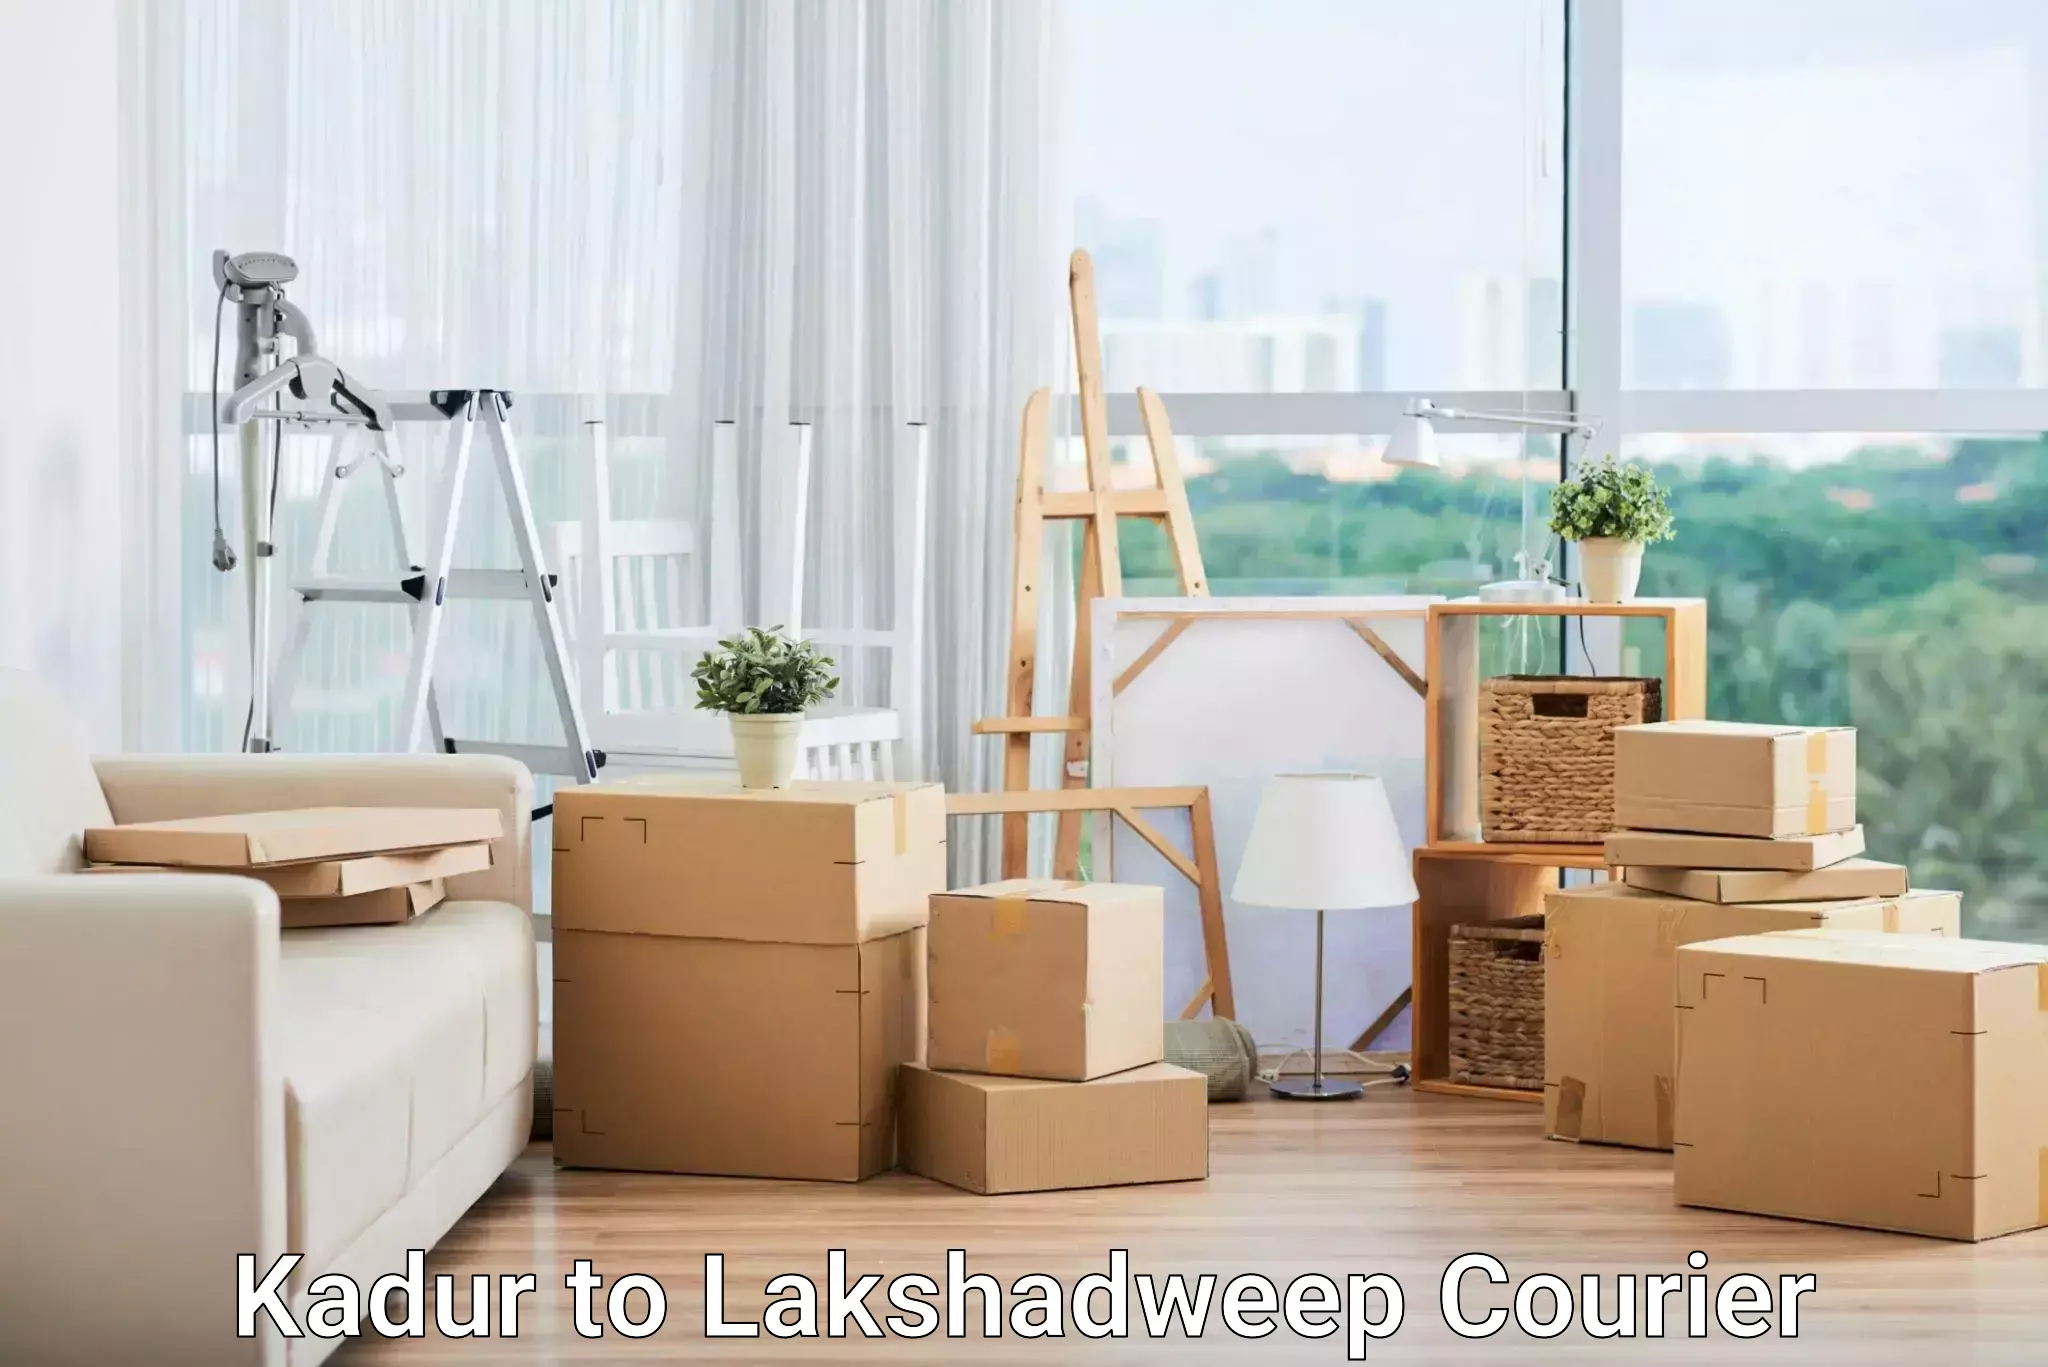 Innovative logistics solutions Kadur to Lakshadweep